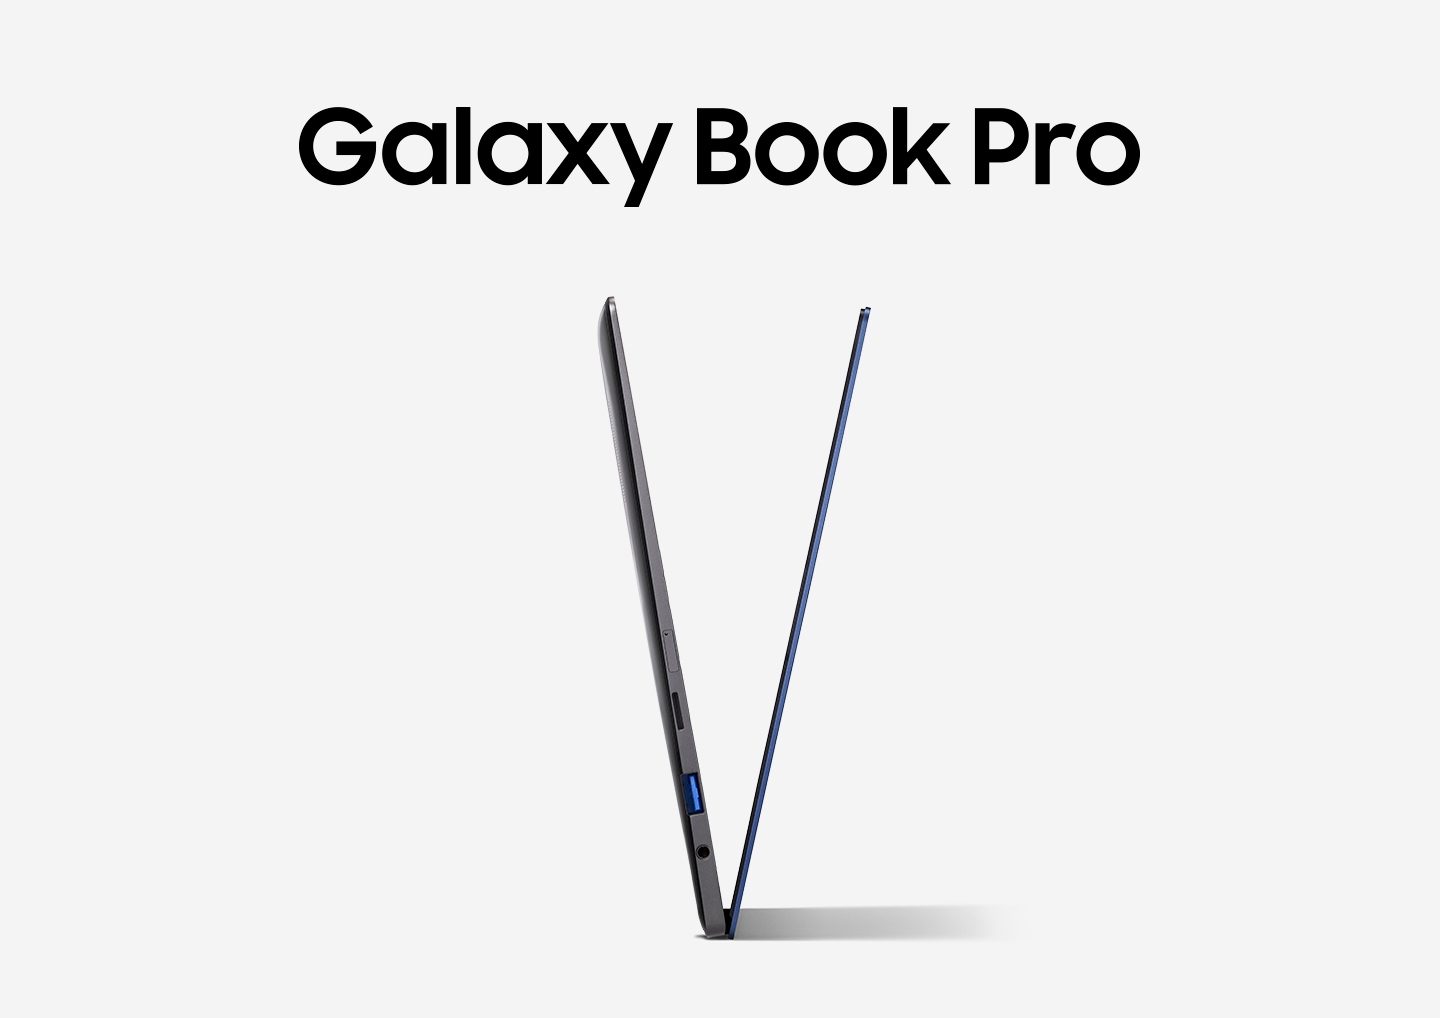 Das Galaxy Book Pro ist in einer V-Form geöffnet und zeigt Richtung Himmel.